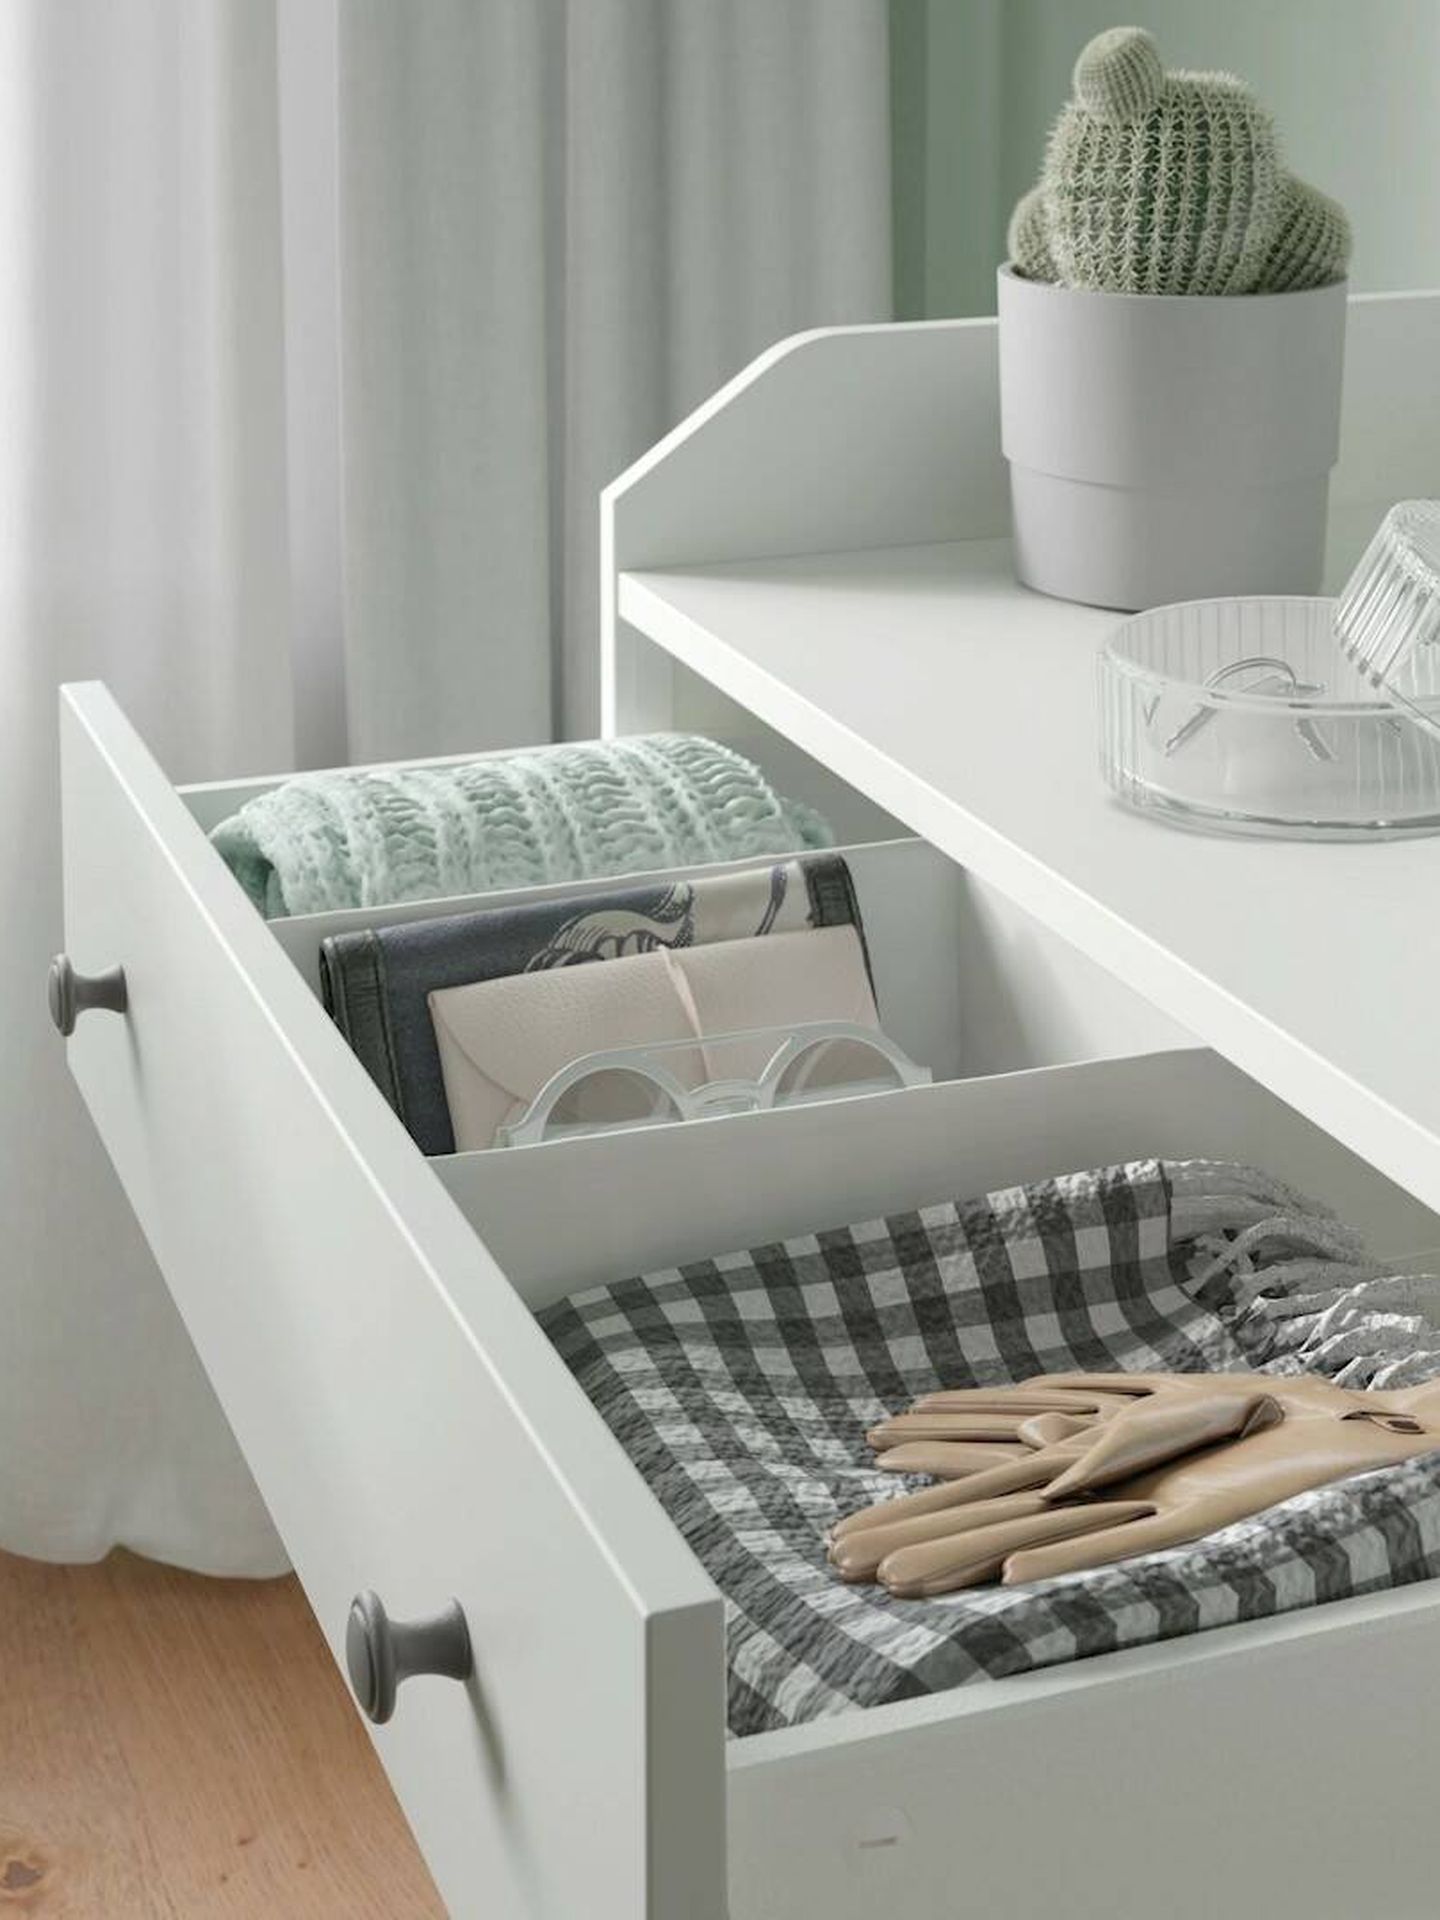 Cómoda de Ikea, perfecta para dormitorios. (Cortesía)